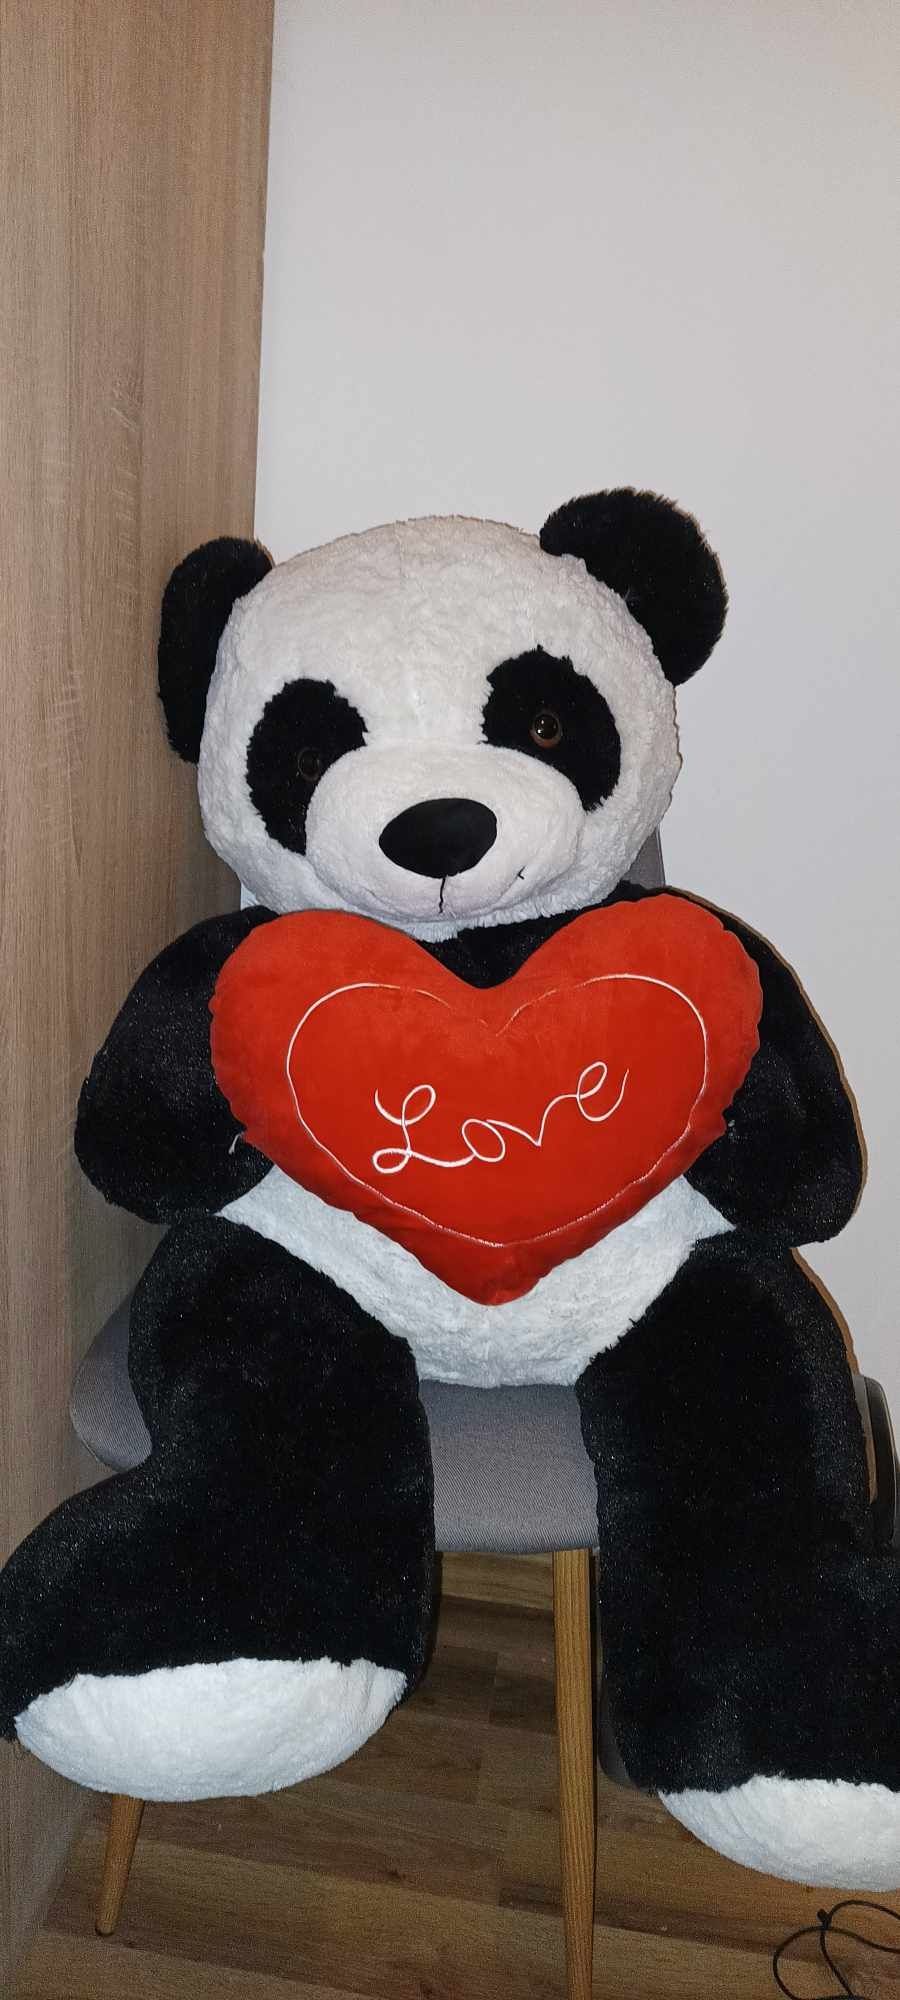 Duża panda miś pluszowy zabawka pluszak XXL serce